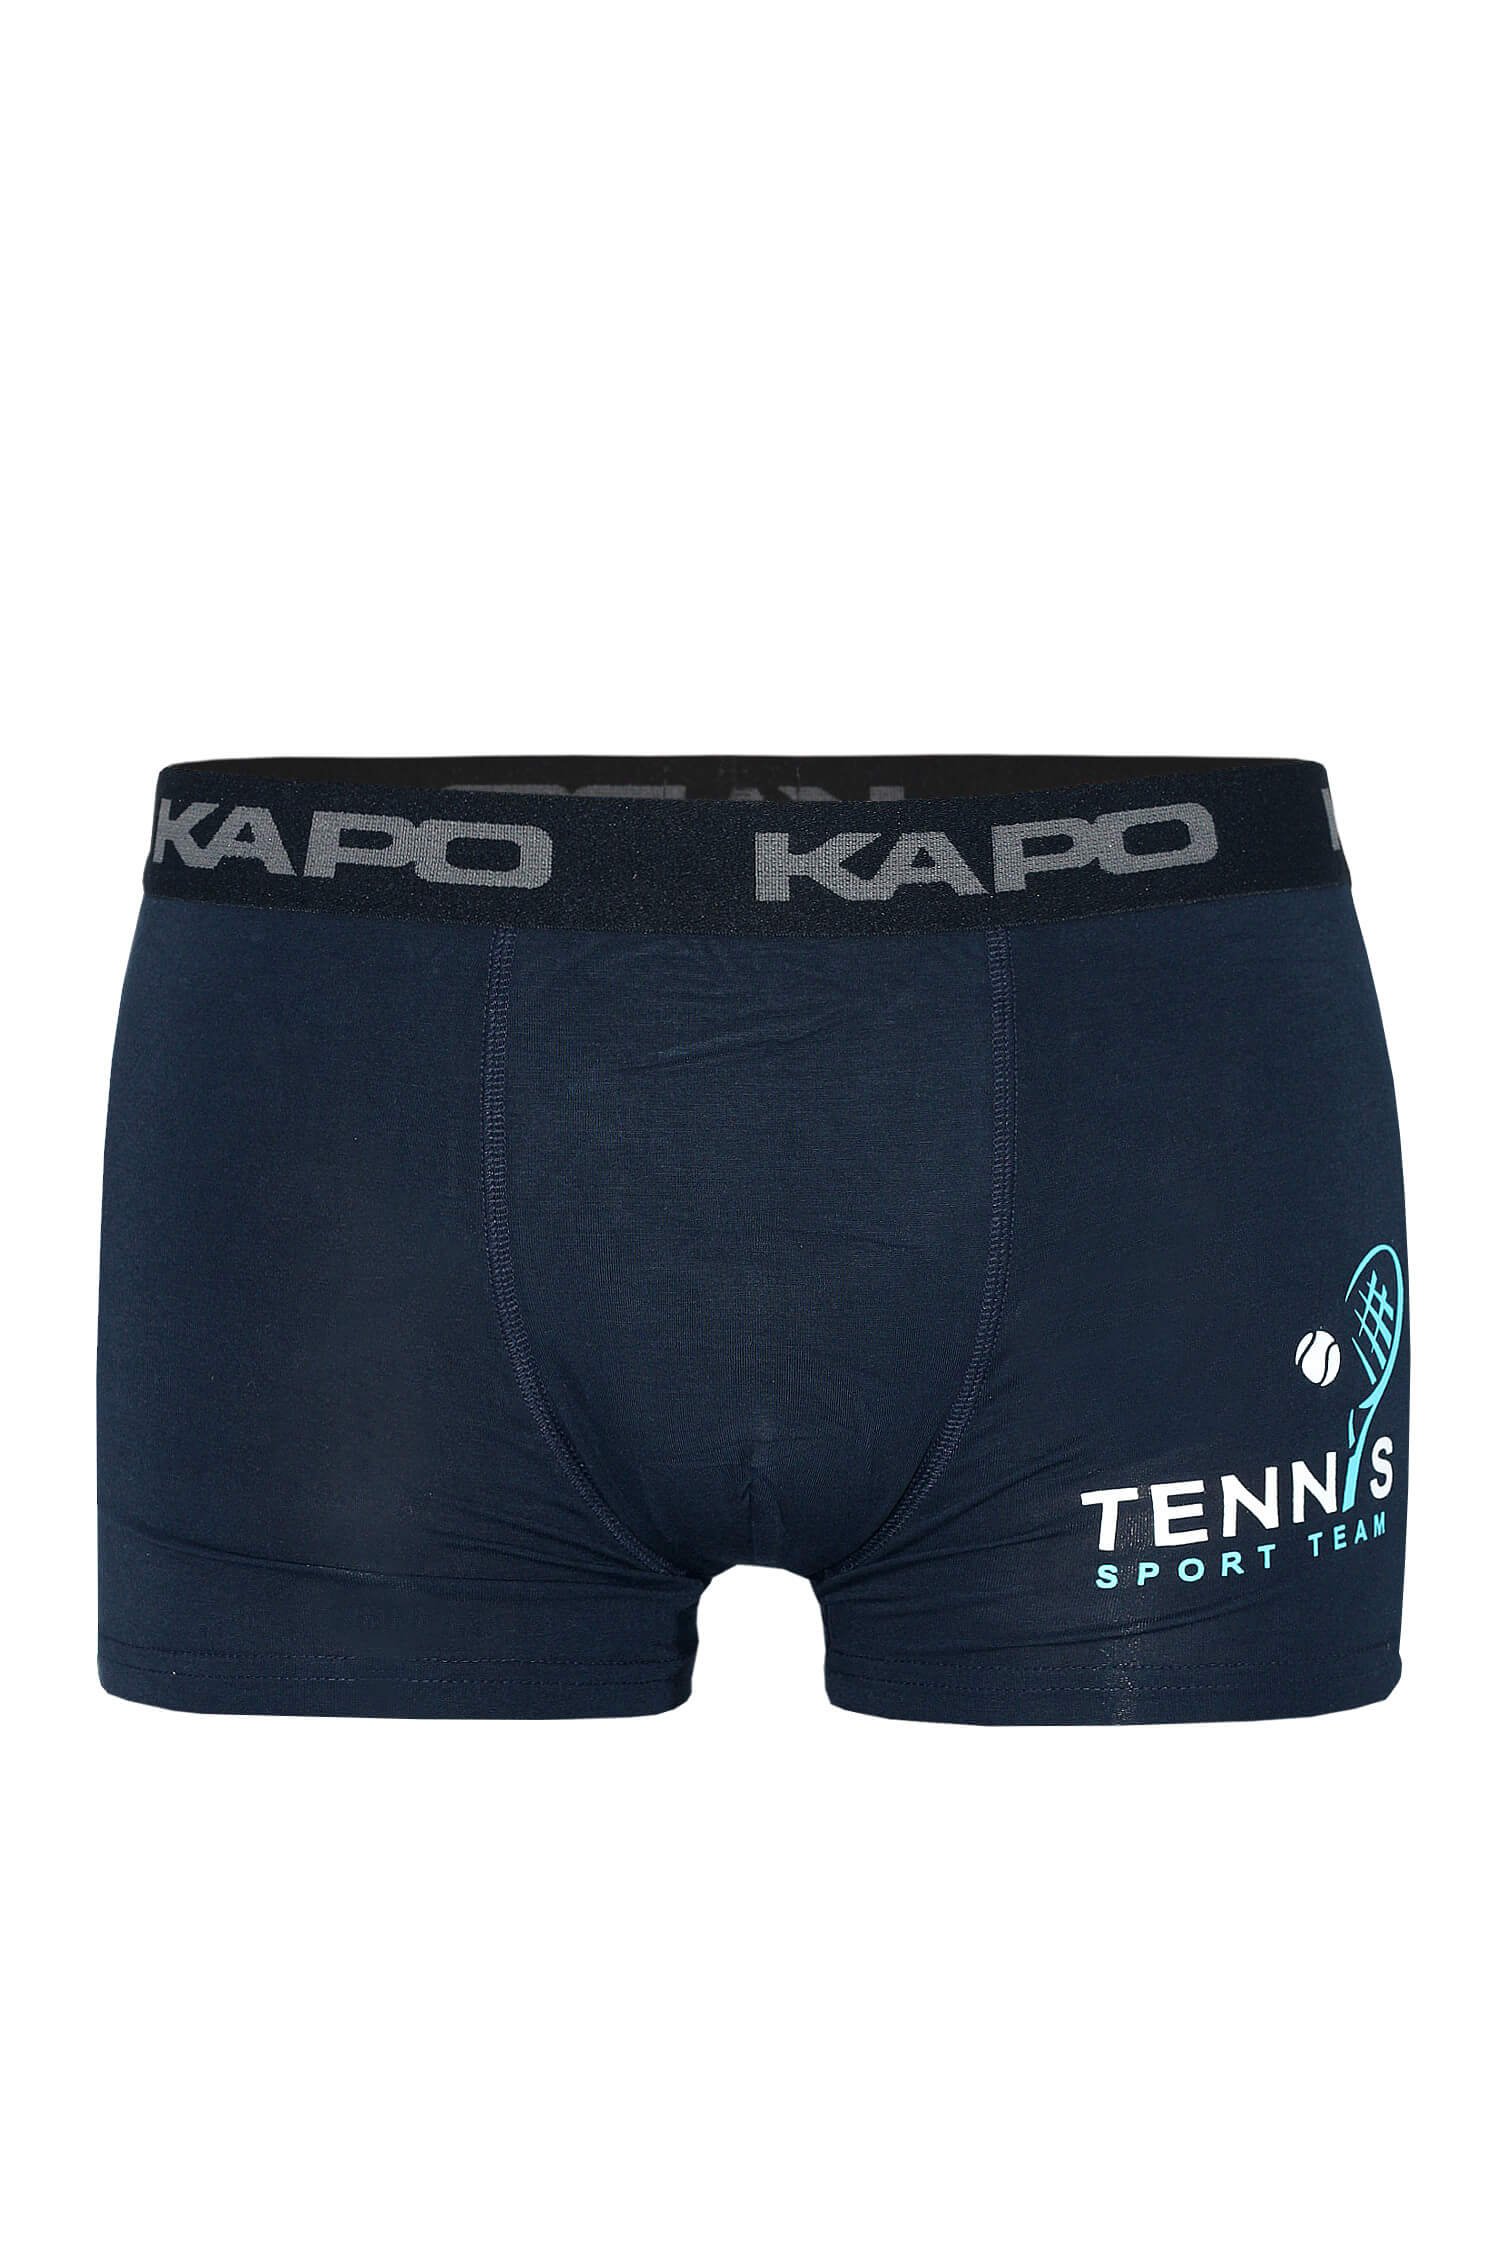 Rafael Kapo tenis boxerky M tmavě modrá